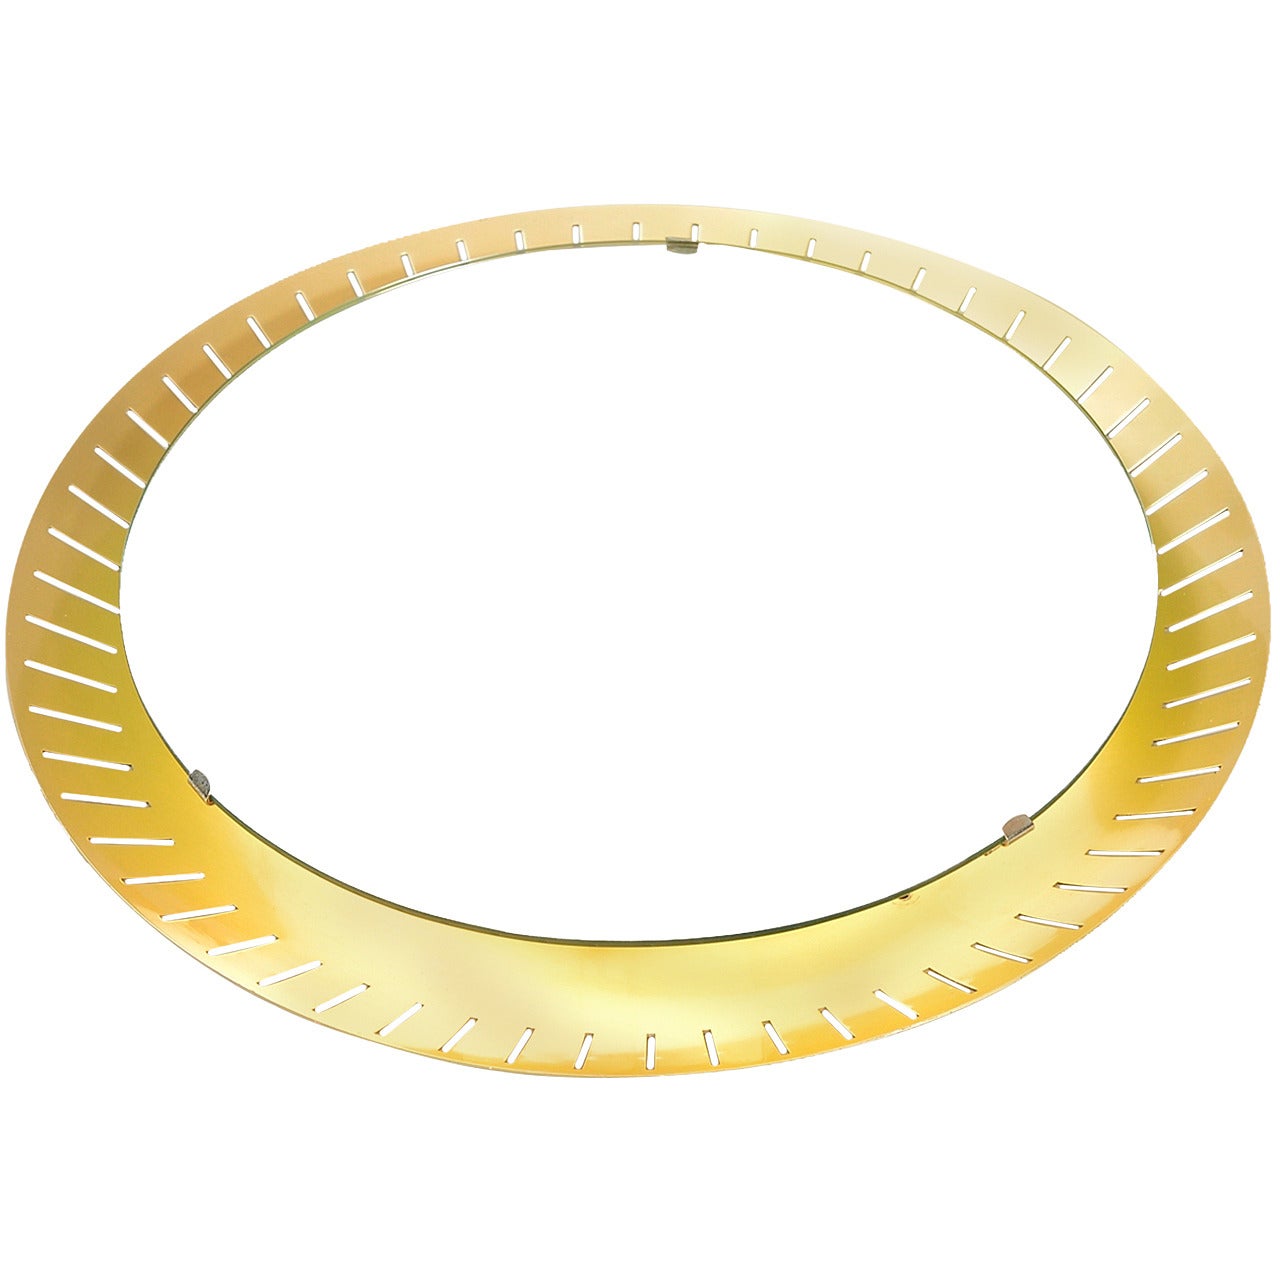 Stilnovo Illuminated Midcentury Round Mirror